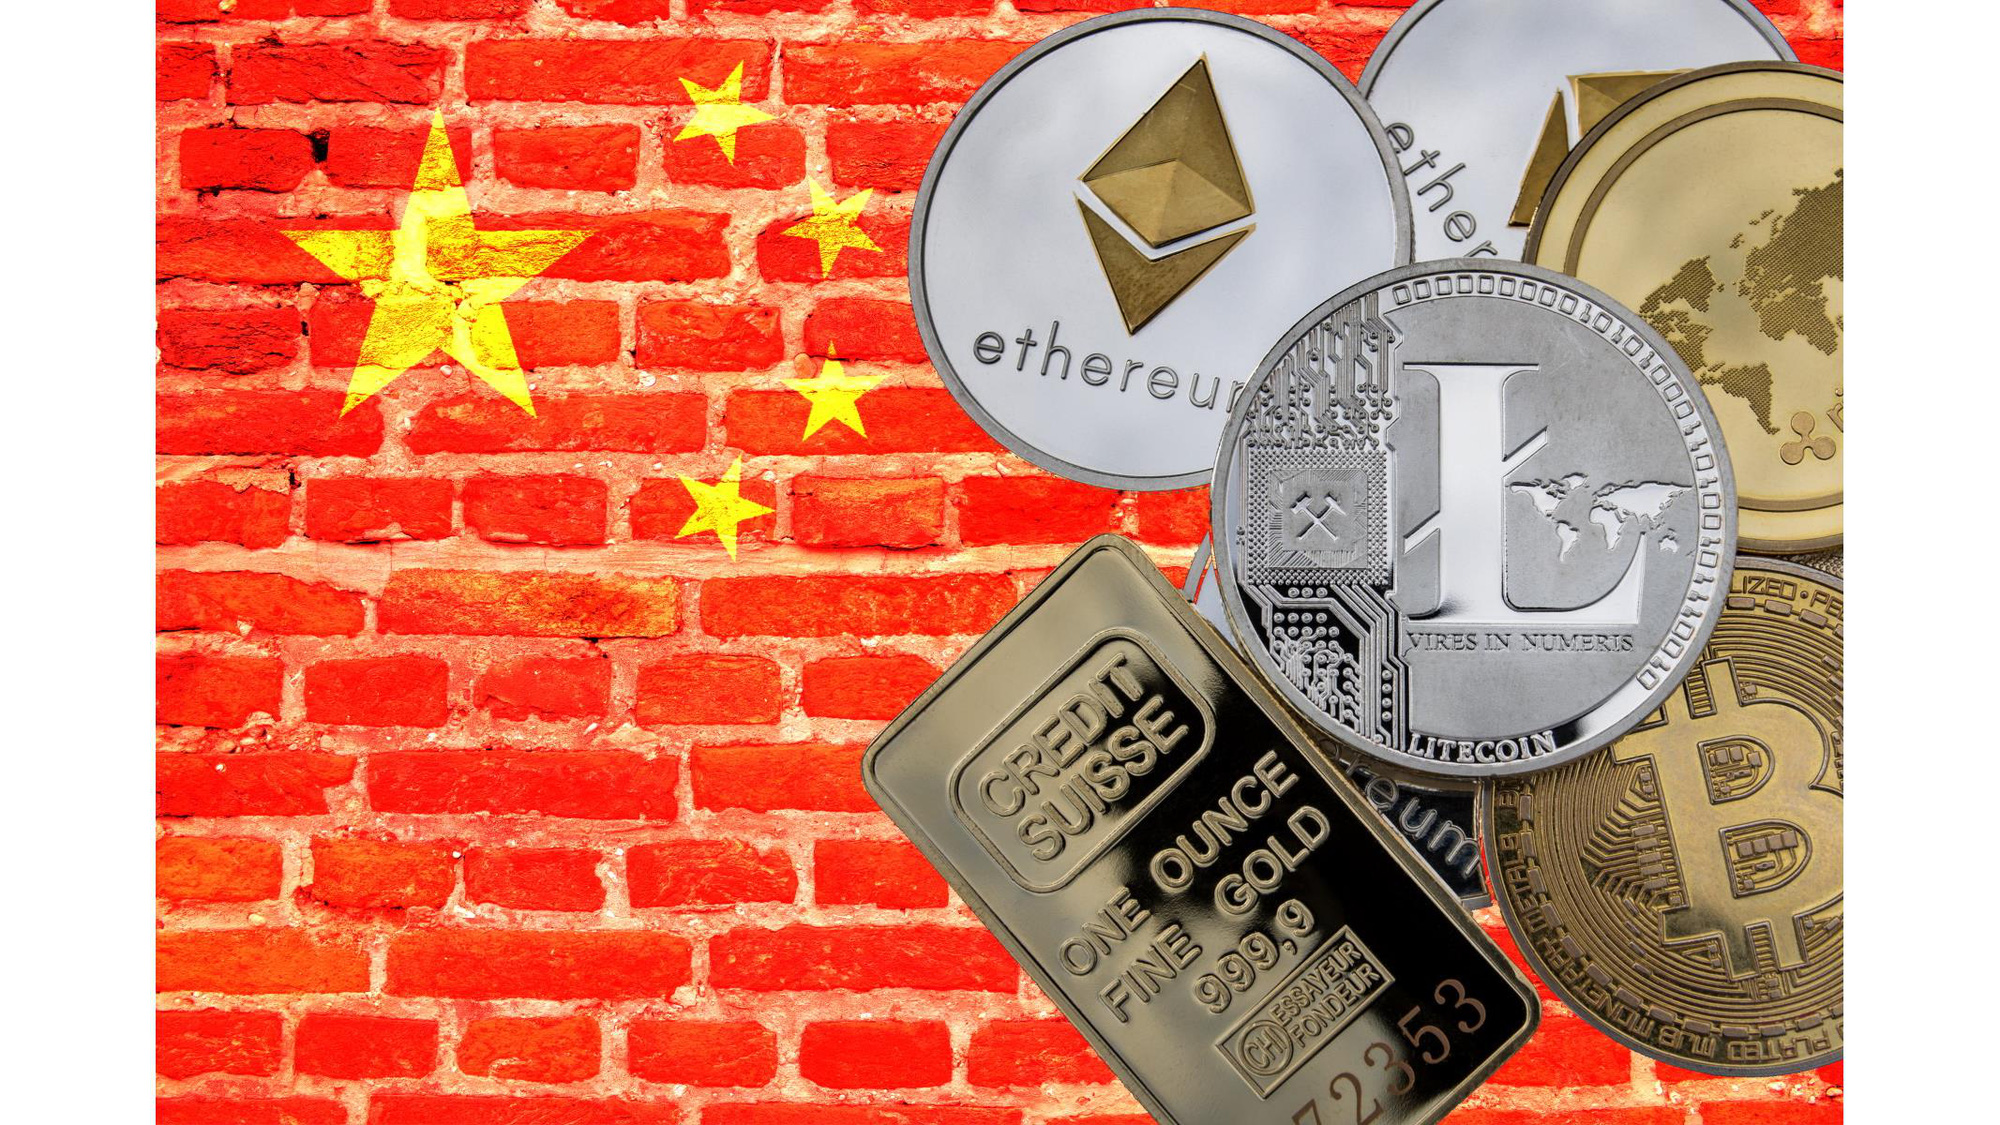 Trung Quốc đang siết chặt hoạt động khai thác Bitcoin và một số chuyên gia lo ngại rằng ảnh hưởng đến môi trường của tiền điện tử nói chung. Ảnh: @AFP.